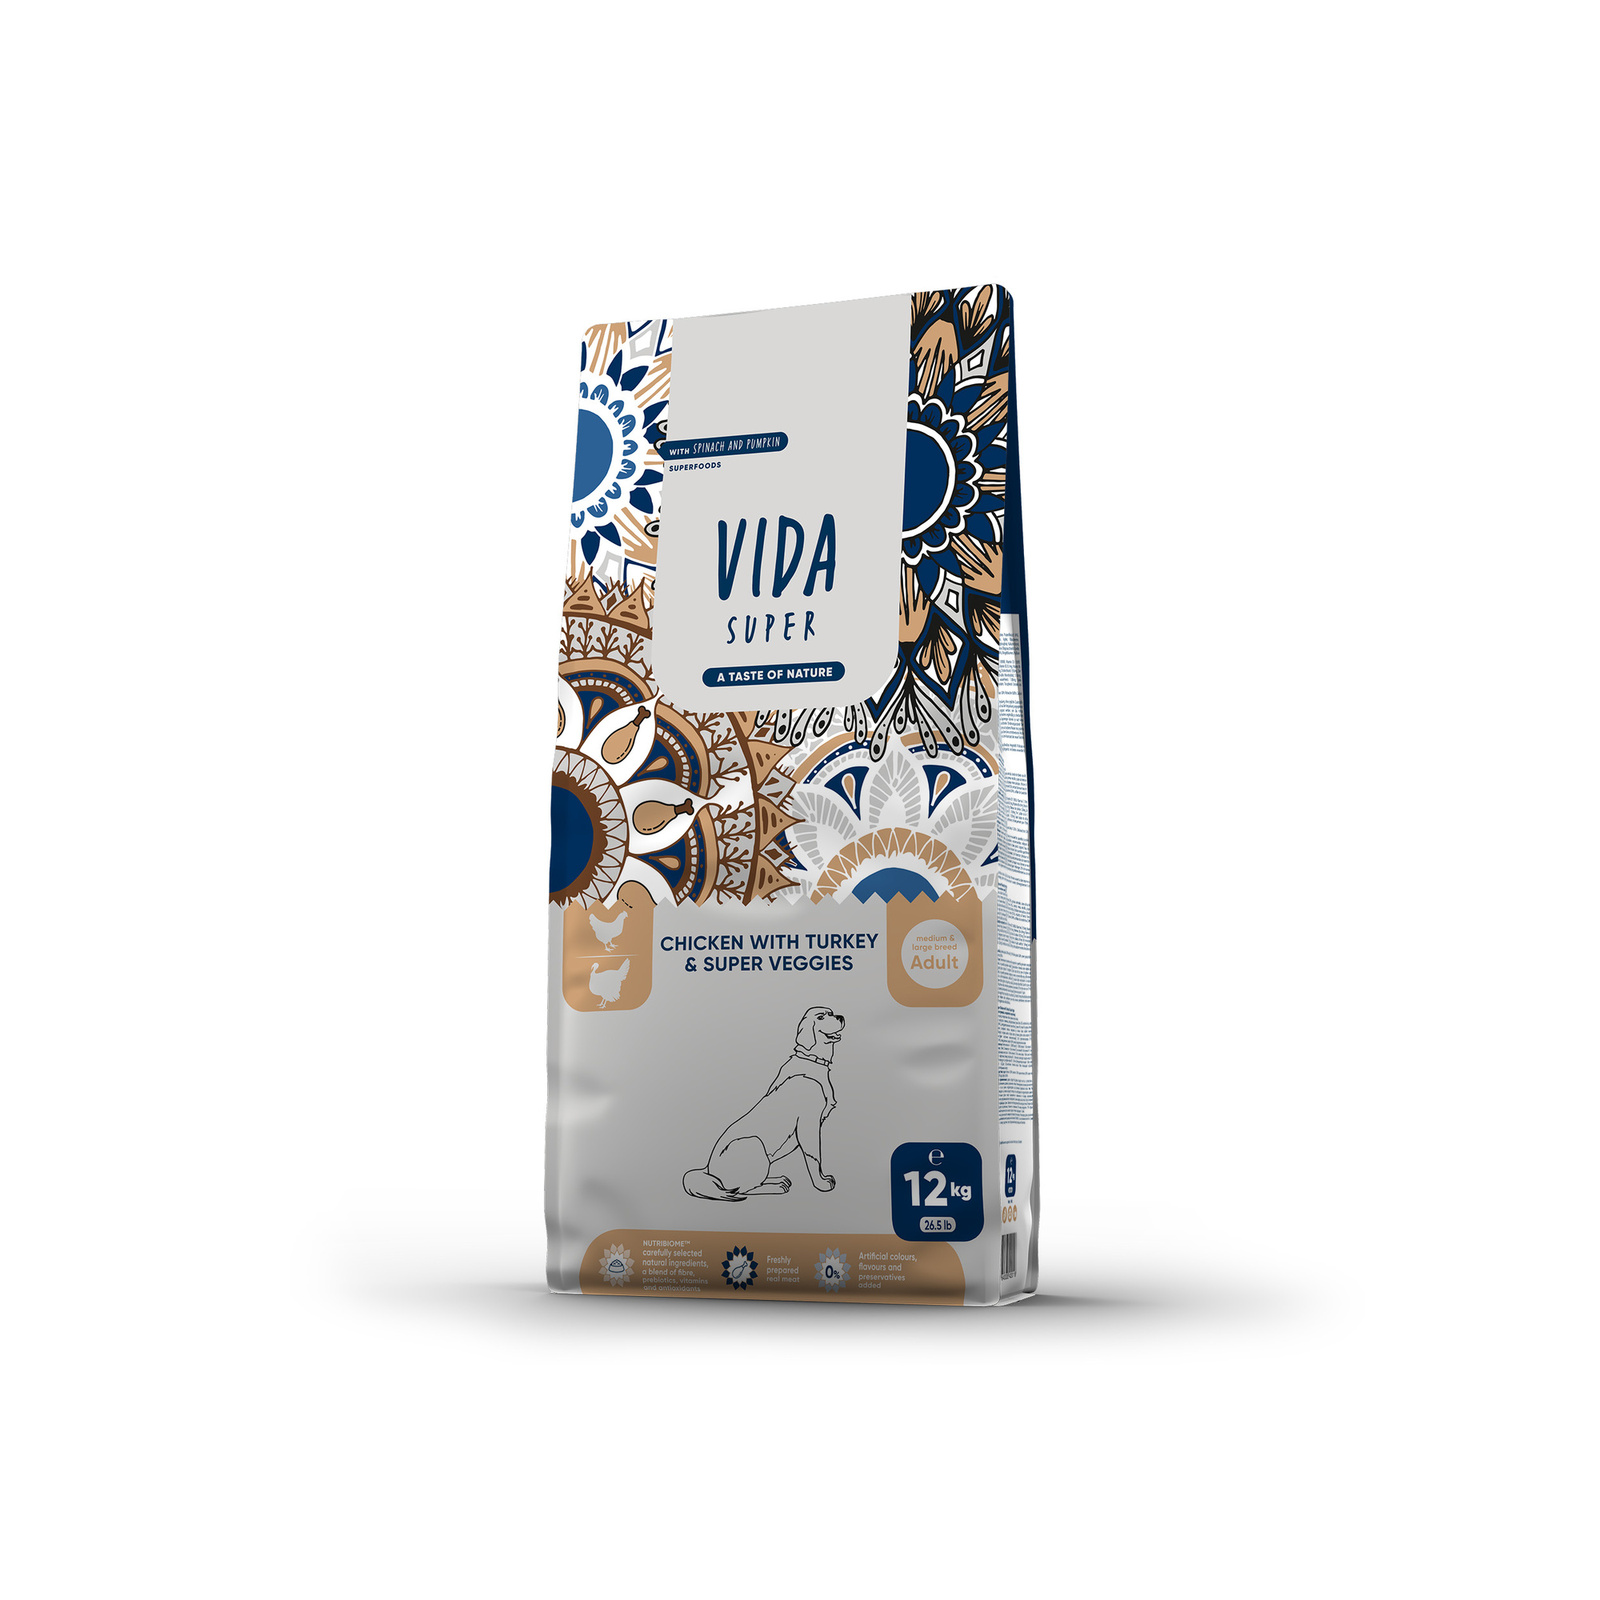 VIDA Super VIDA Super корм для взрослых собак средних и крупных пород с курицей, индейкой и овощами (12 кг)